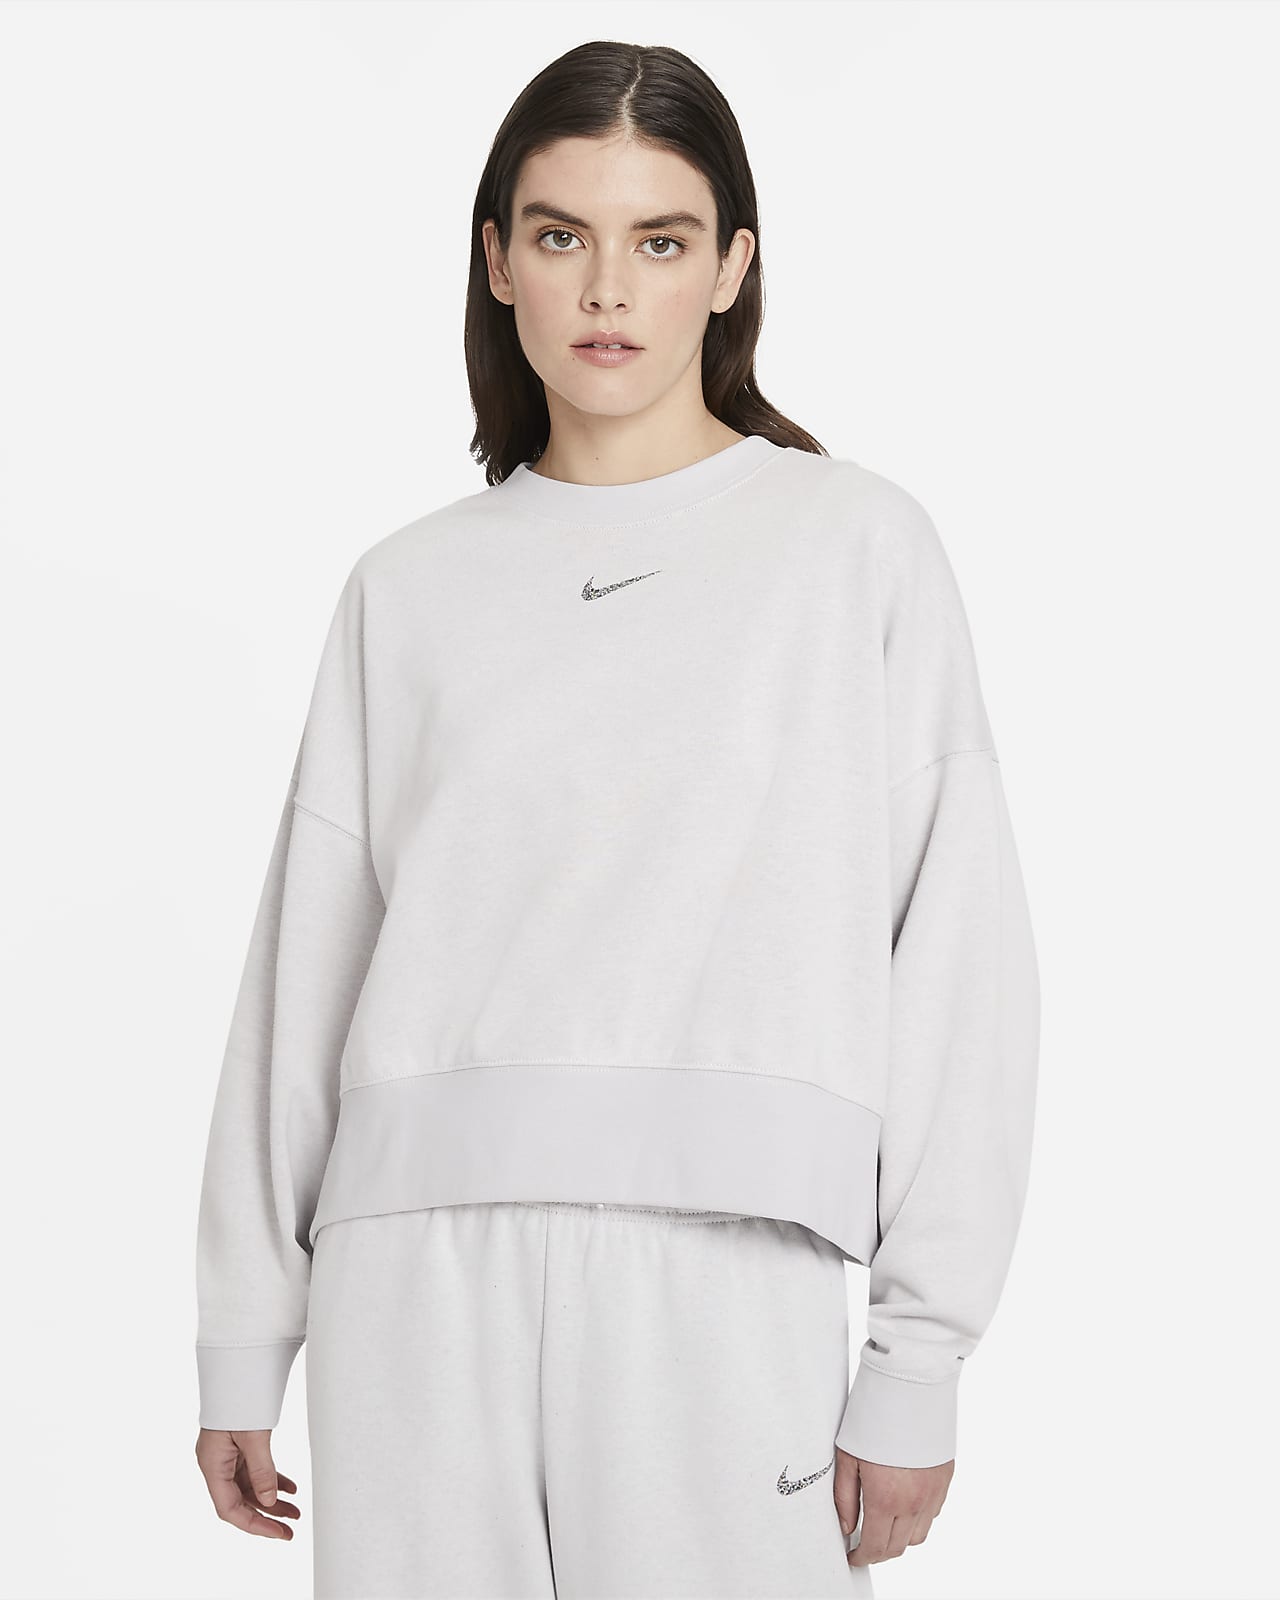 Γυναικείο φλις crew σε φαρδιά γραμμή Nike Sportswear Collection Essentials